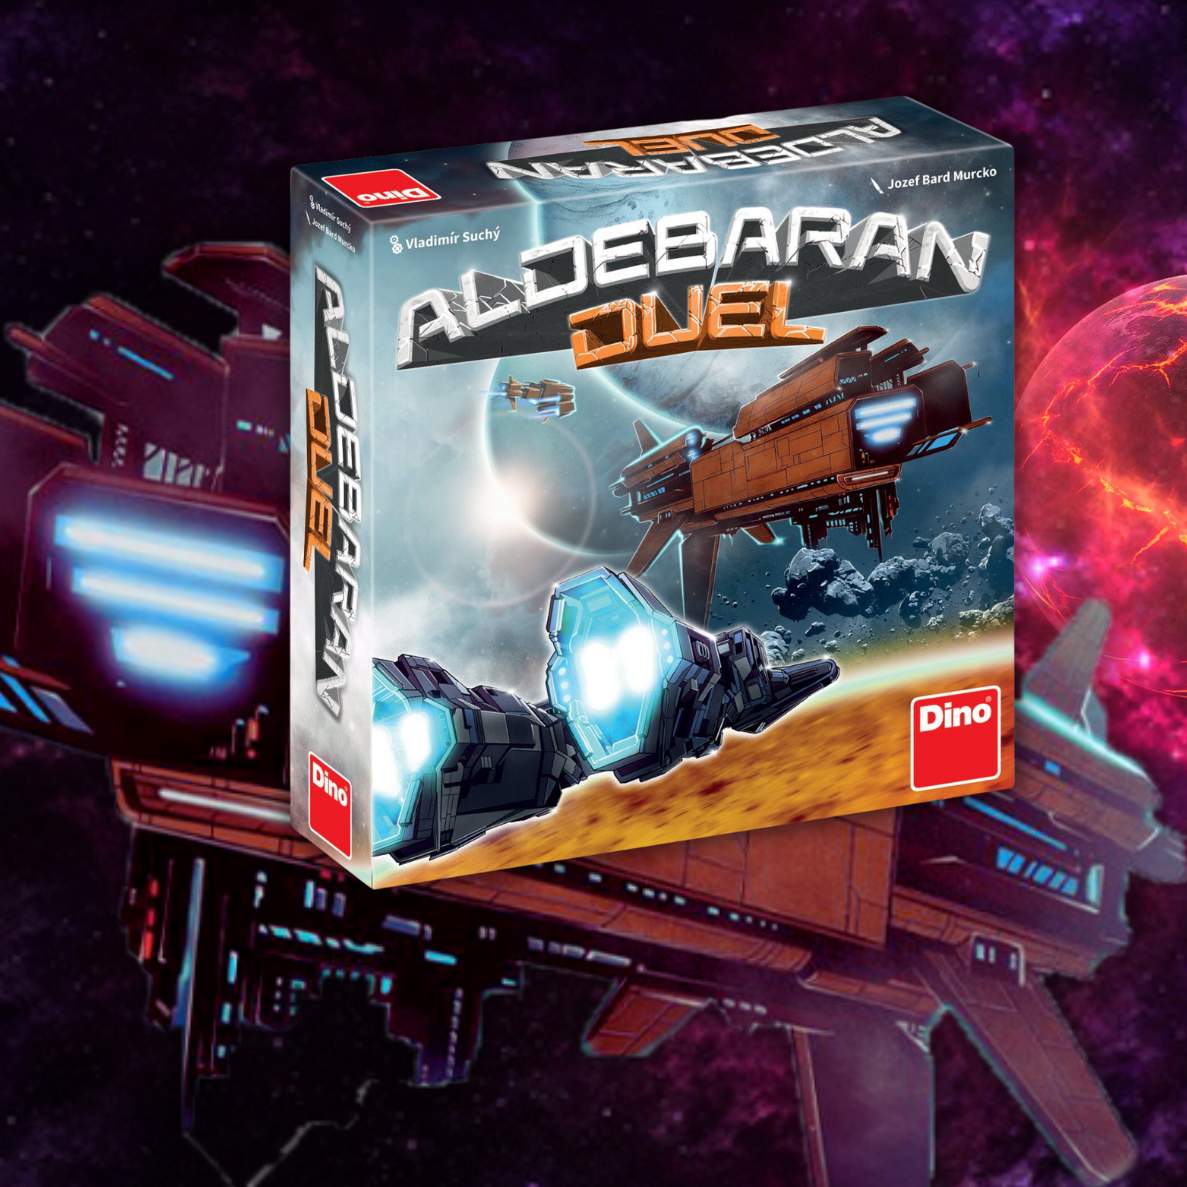 pudełko gry Aldebaran Duel, w tle statek kosmiczny